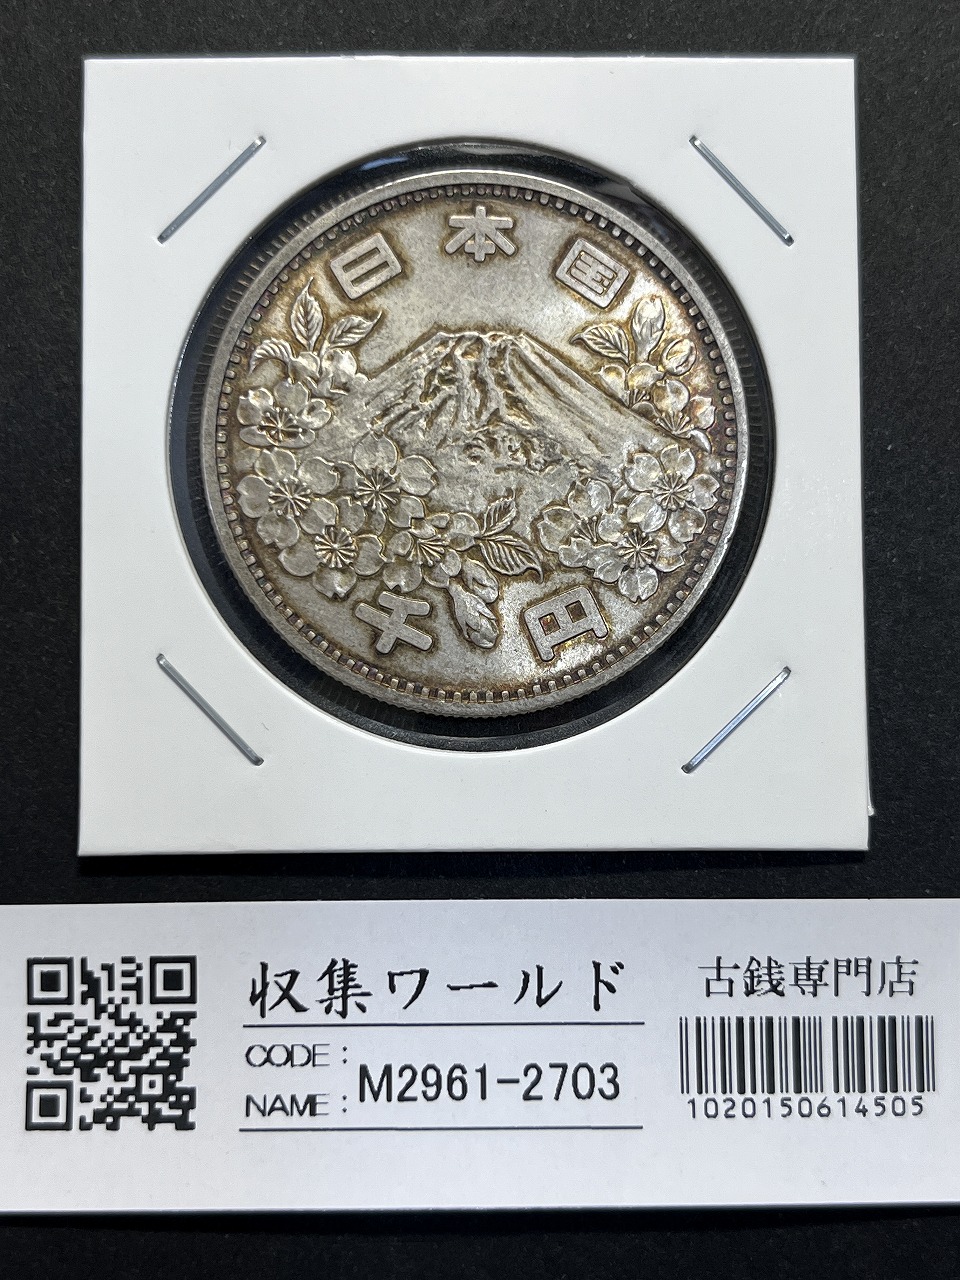 東京オリンピック記念 1964年(S39) 1000円銀貨 未使用極美-2703